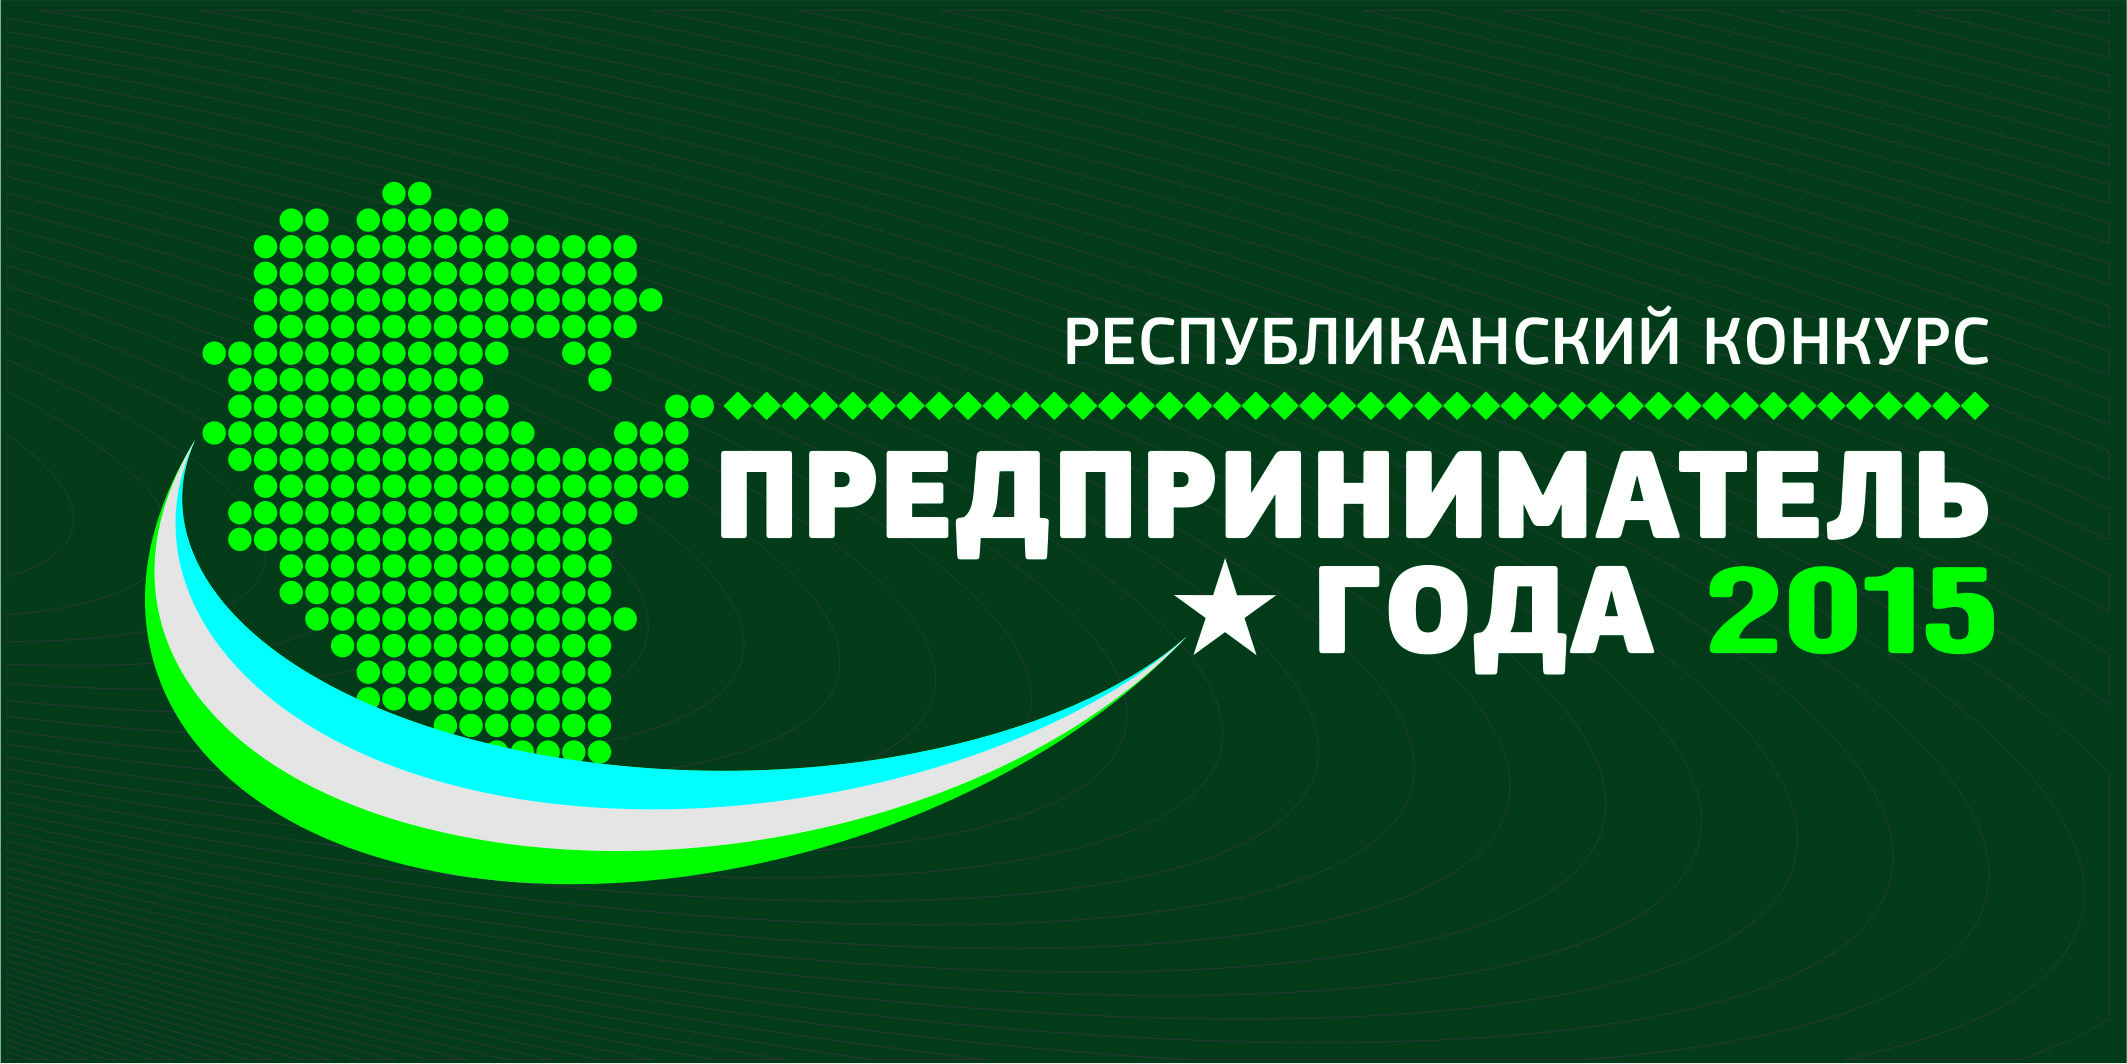 В  Башкортостане стартовал республиканский конкурс «Предприниматель года - 2015»